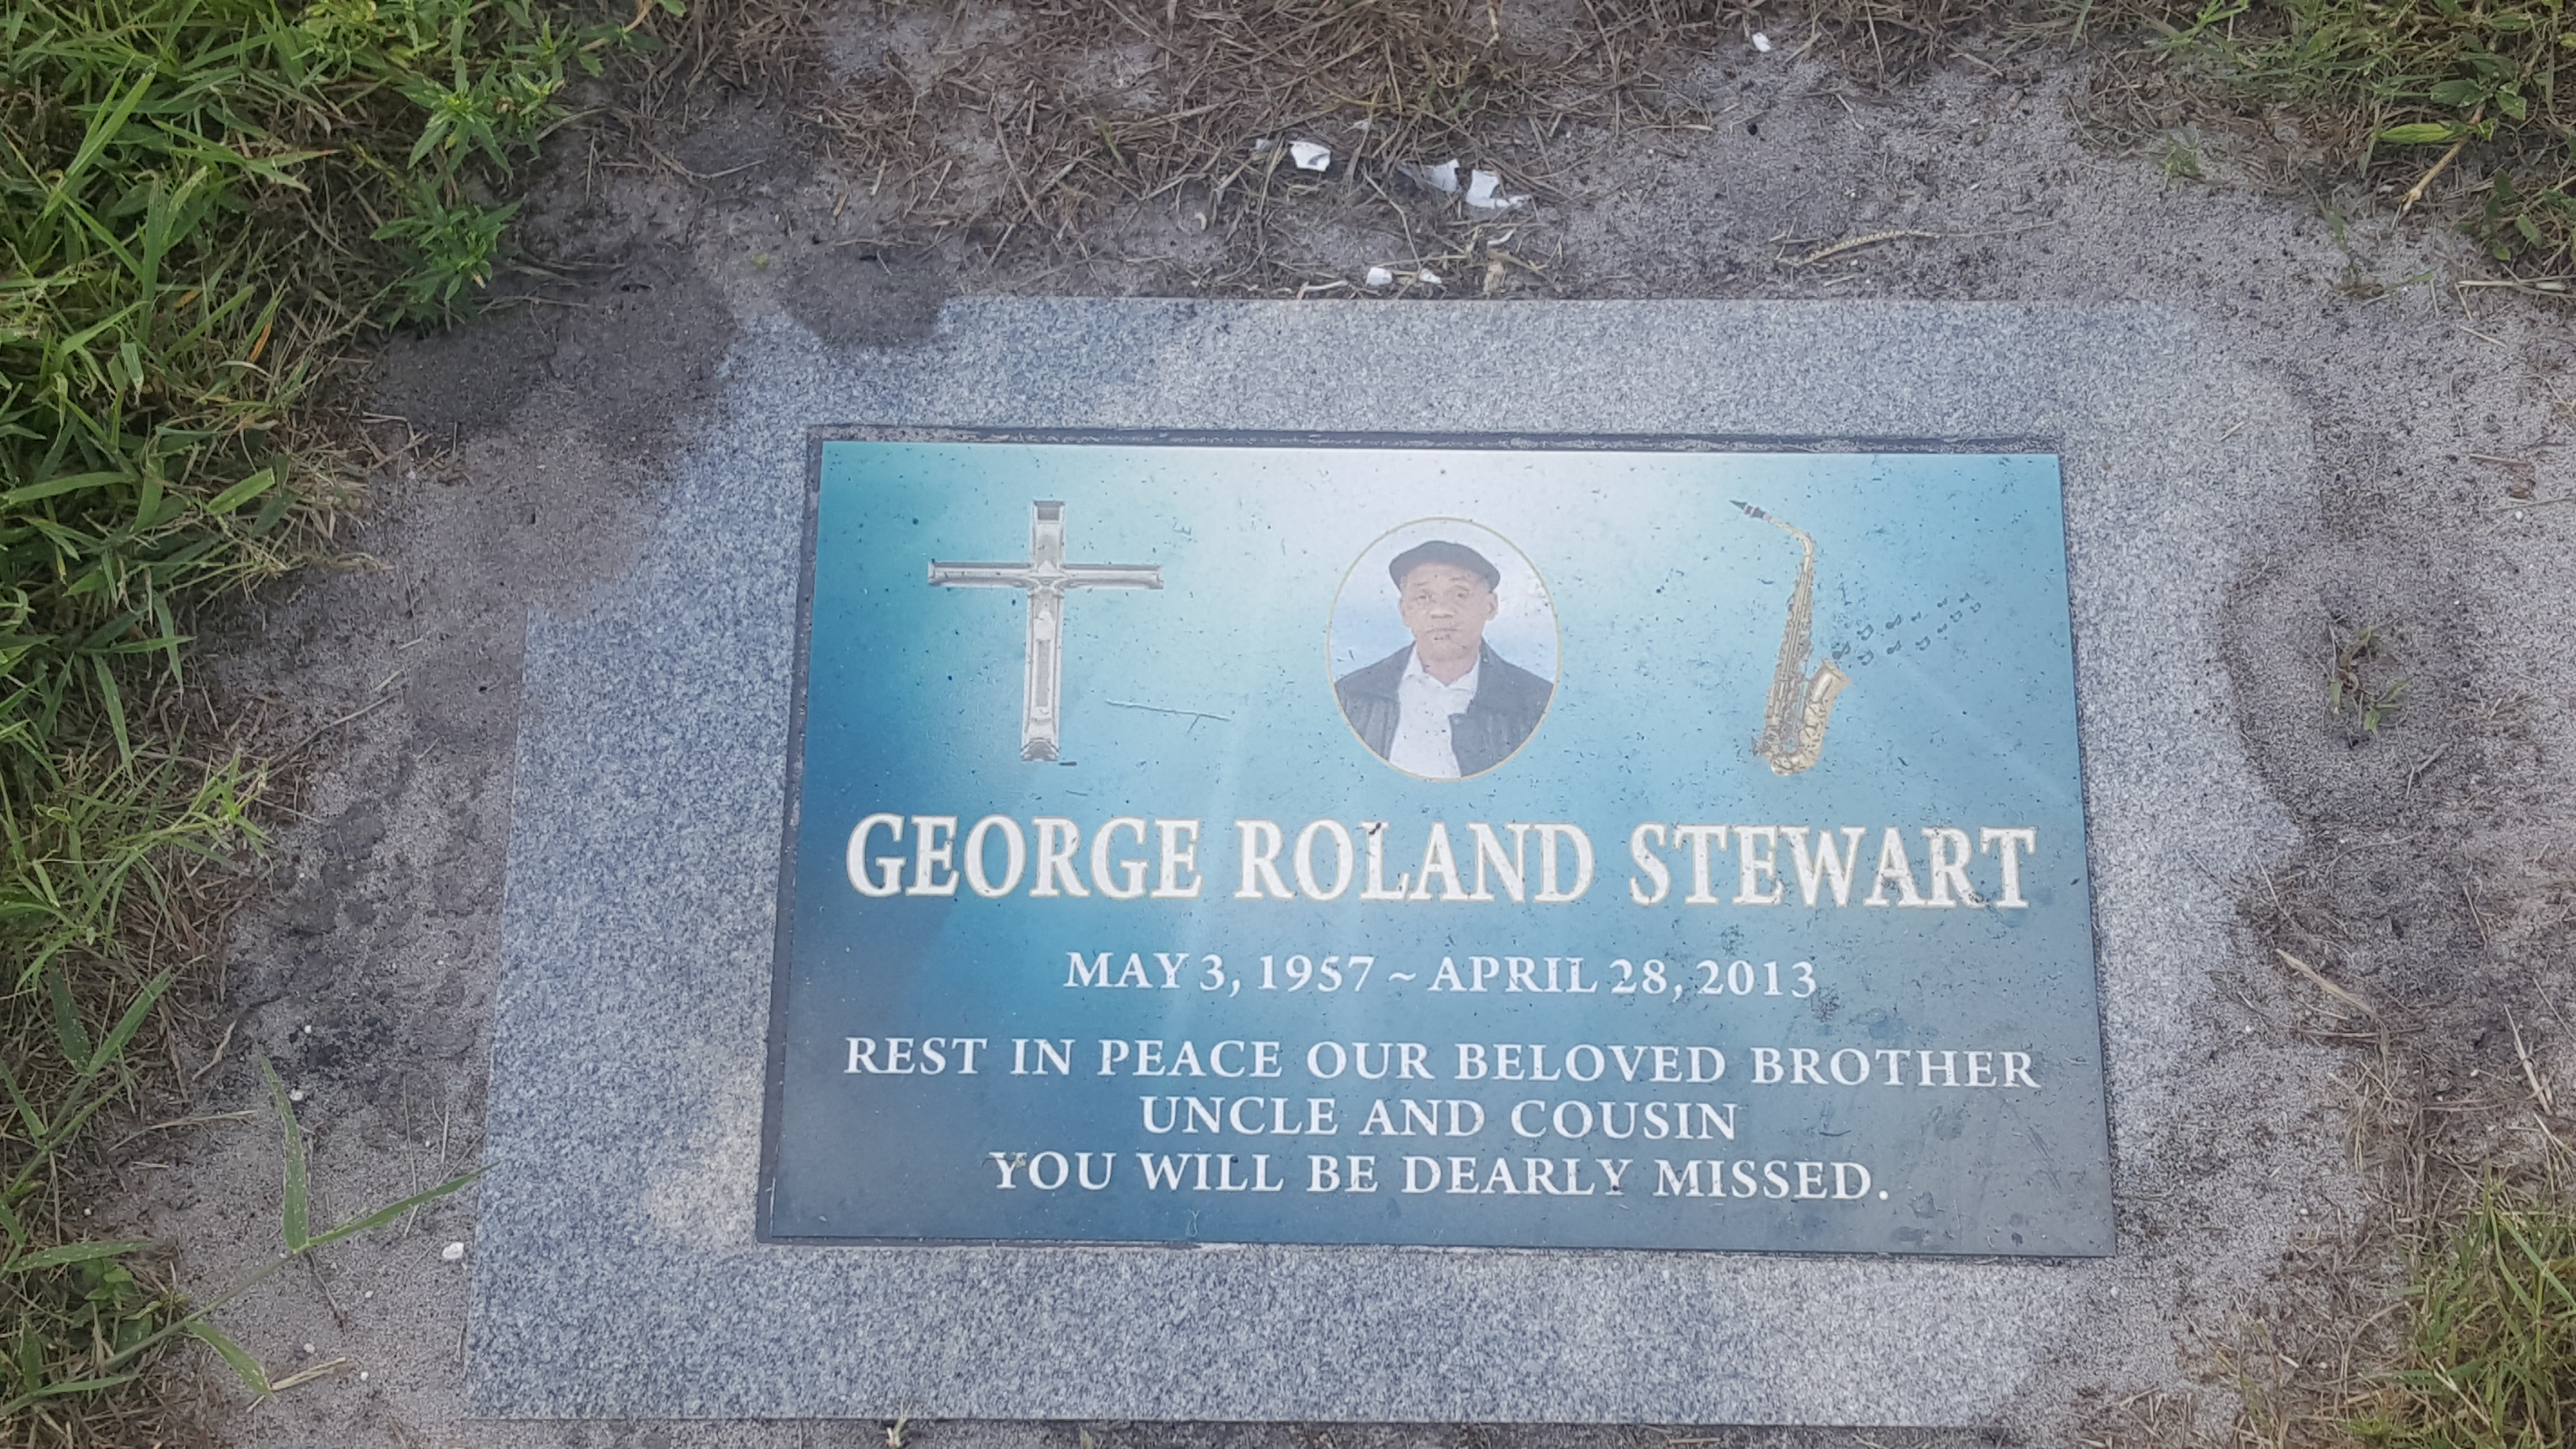 George Roland Stewart